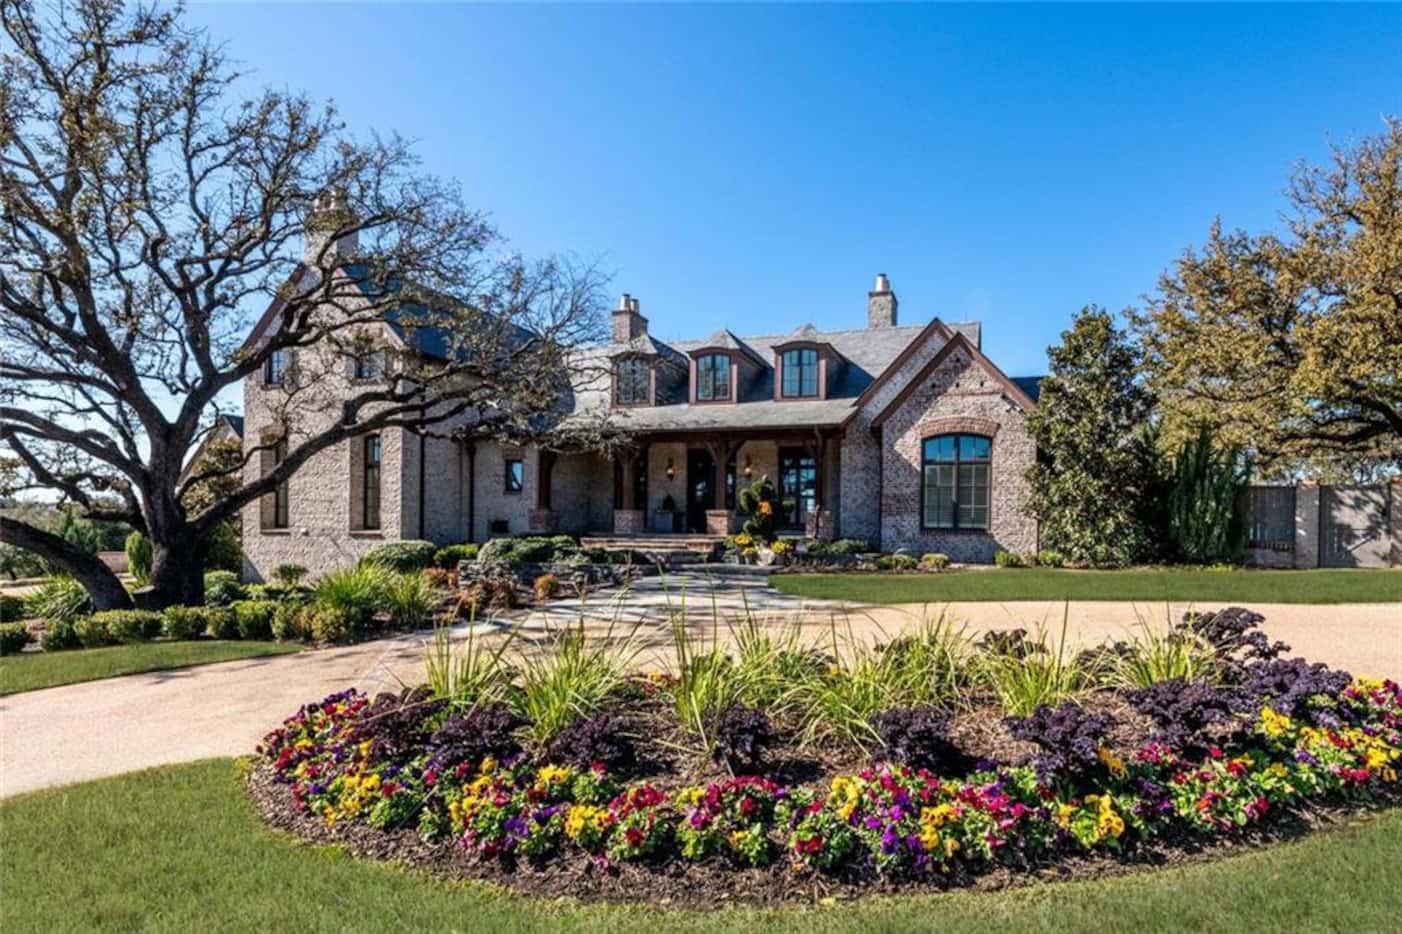 Matt Rhule's home in Woodway outside Waco is for sale.